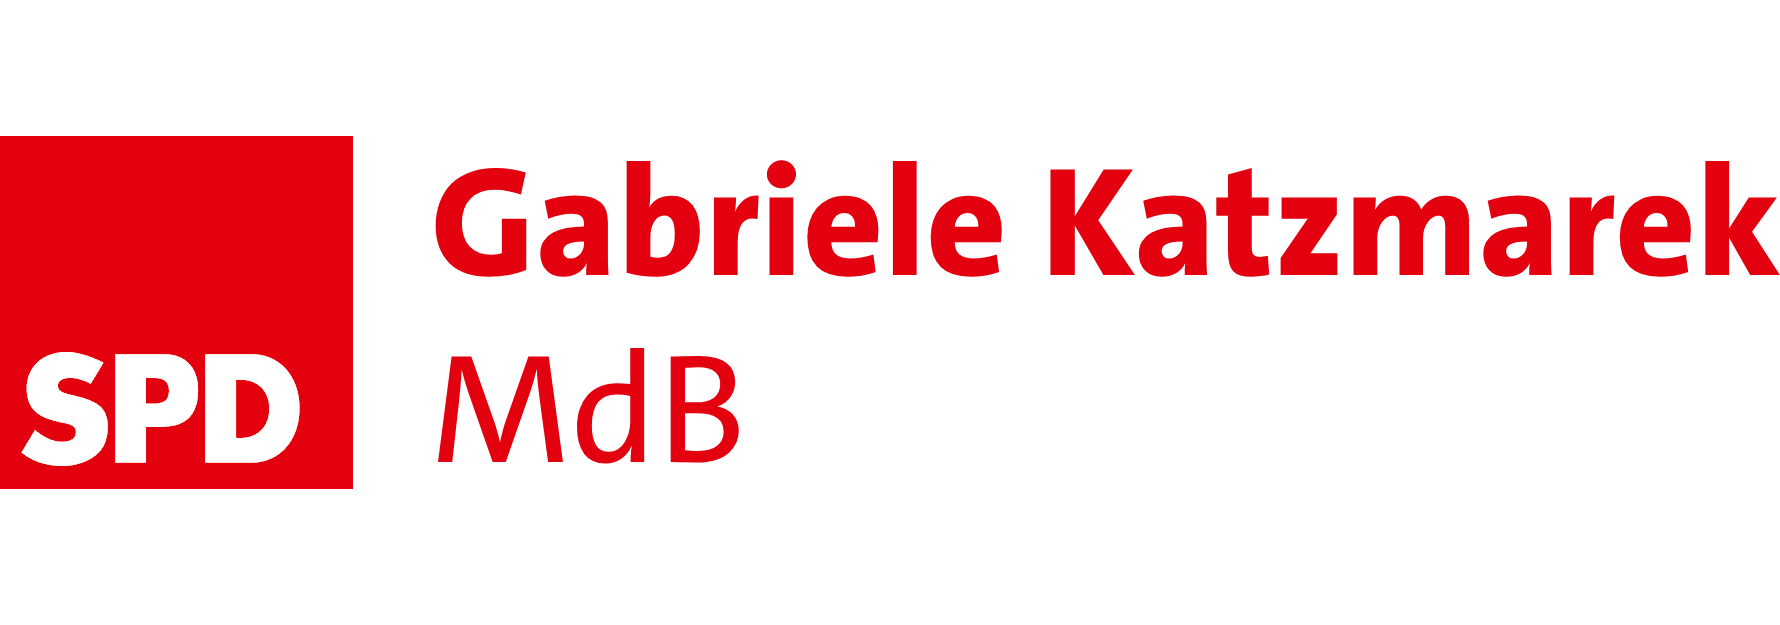 Gabriele Katzmarek